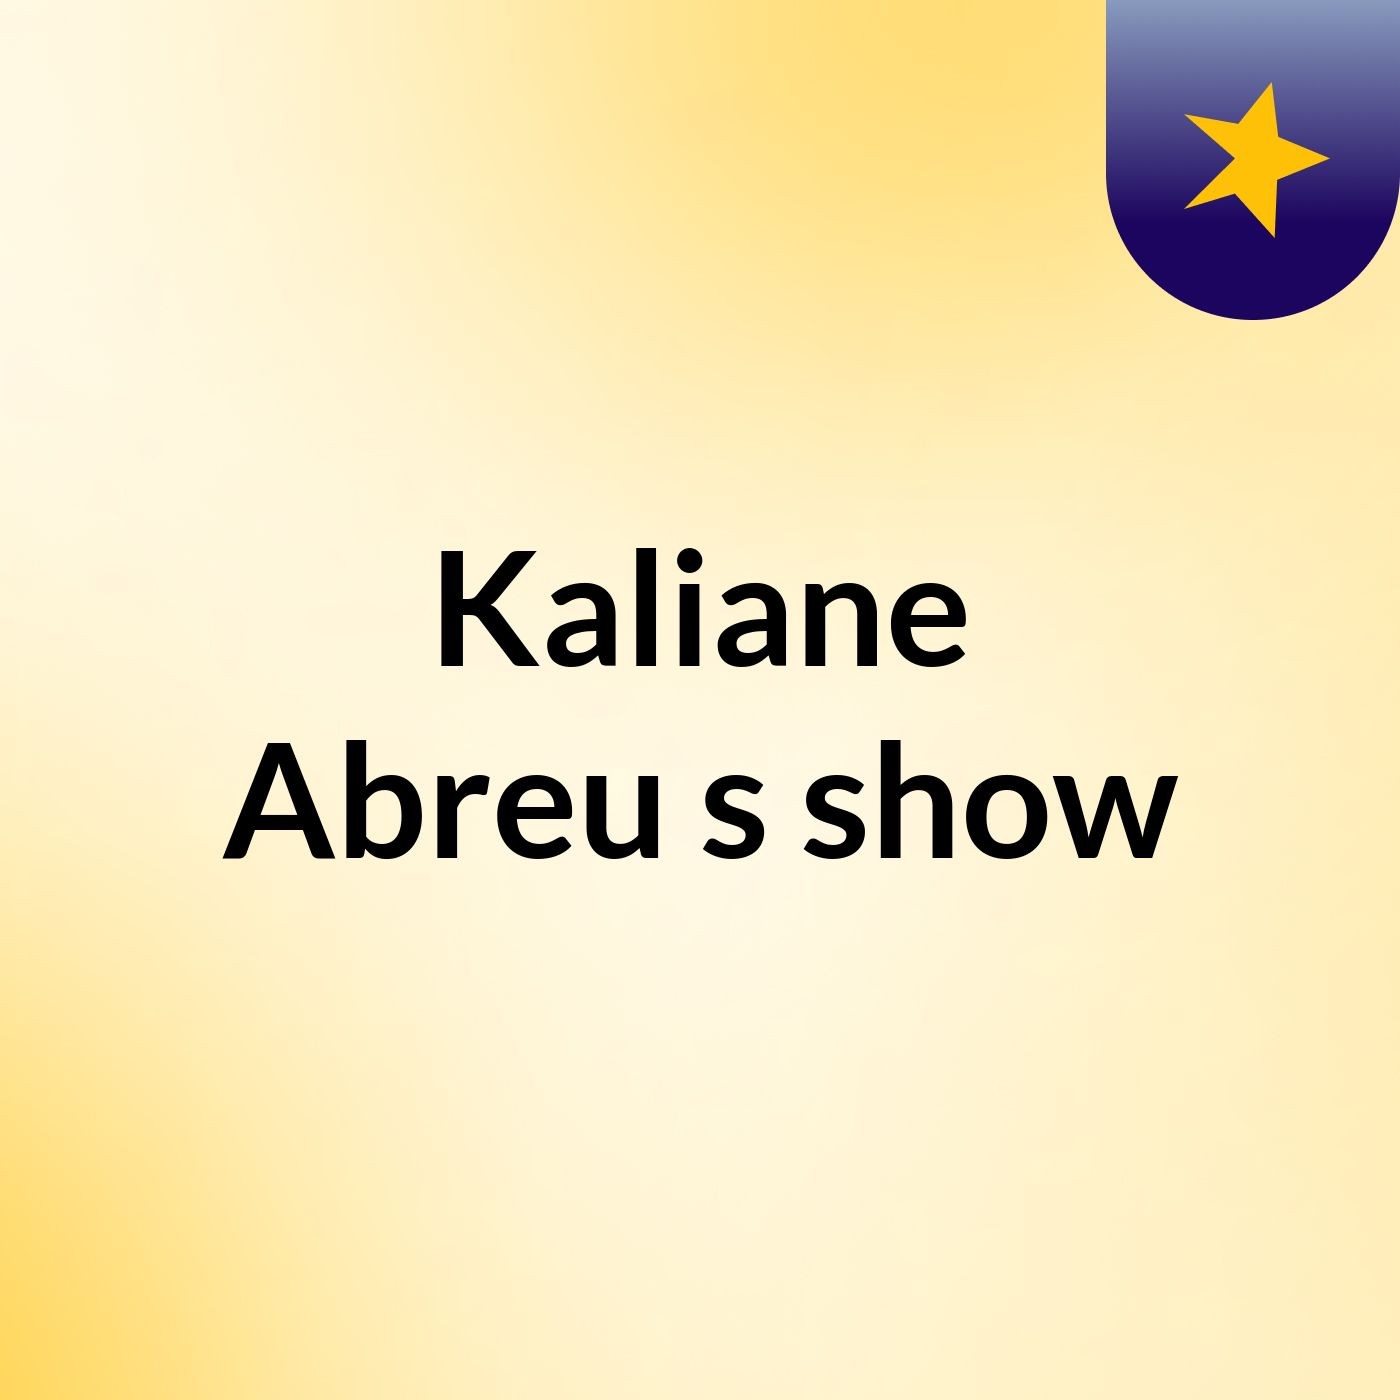 Episódio 2 - Kaliane Abreu's show